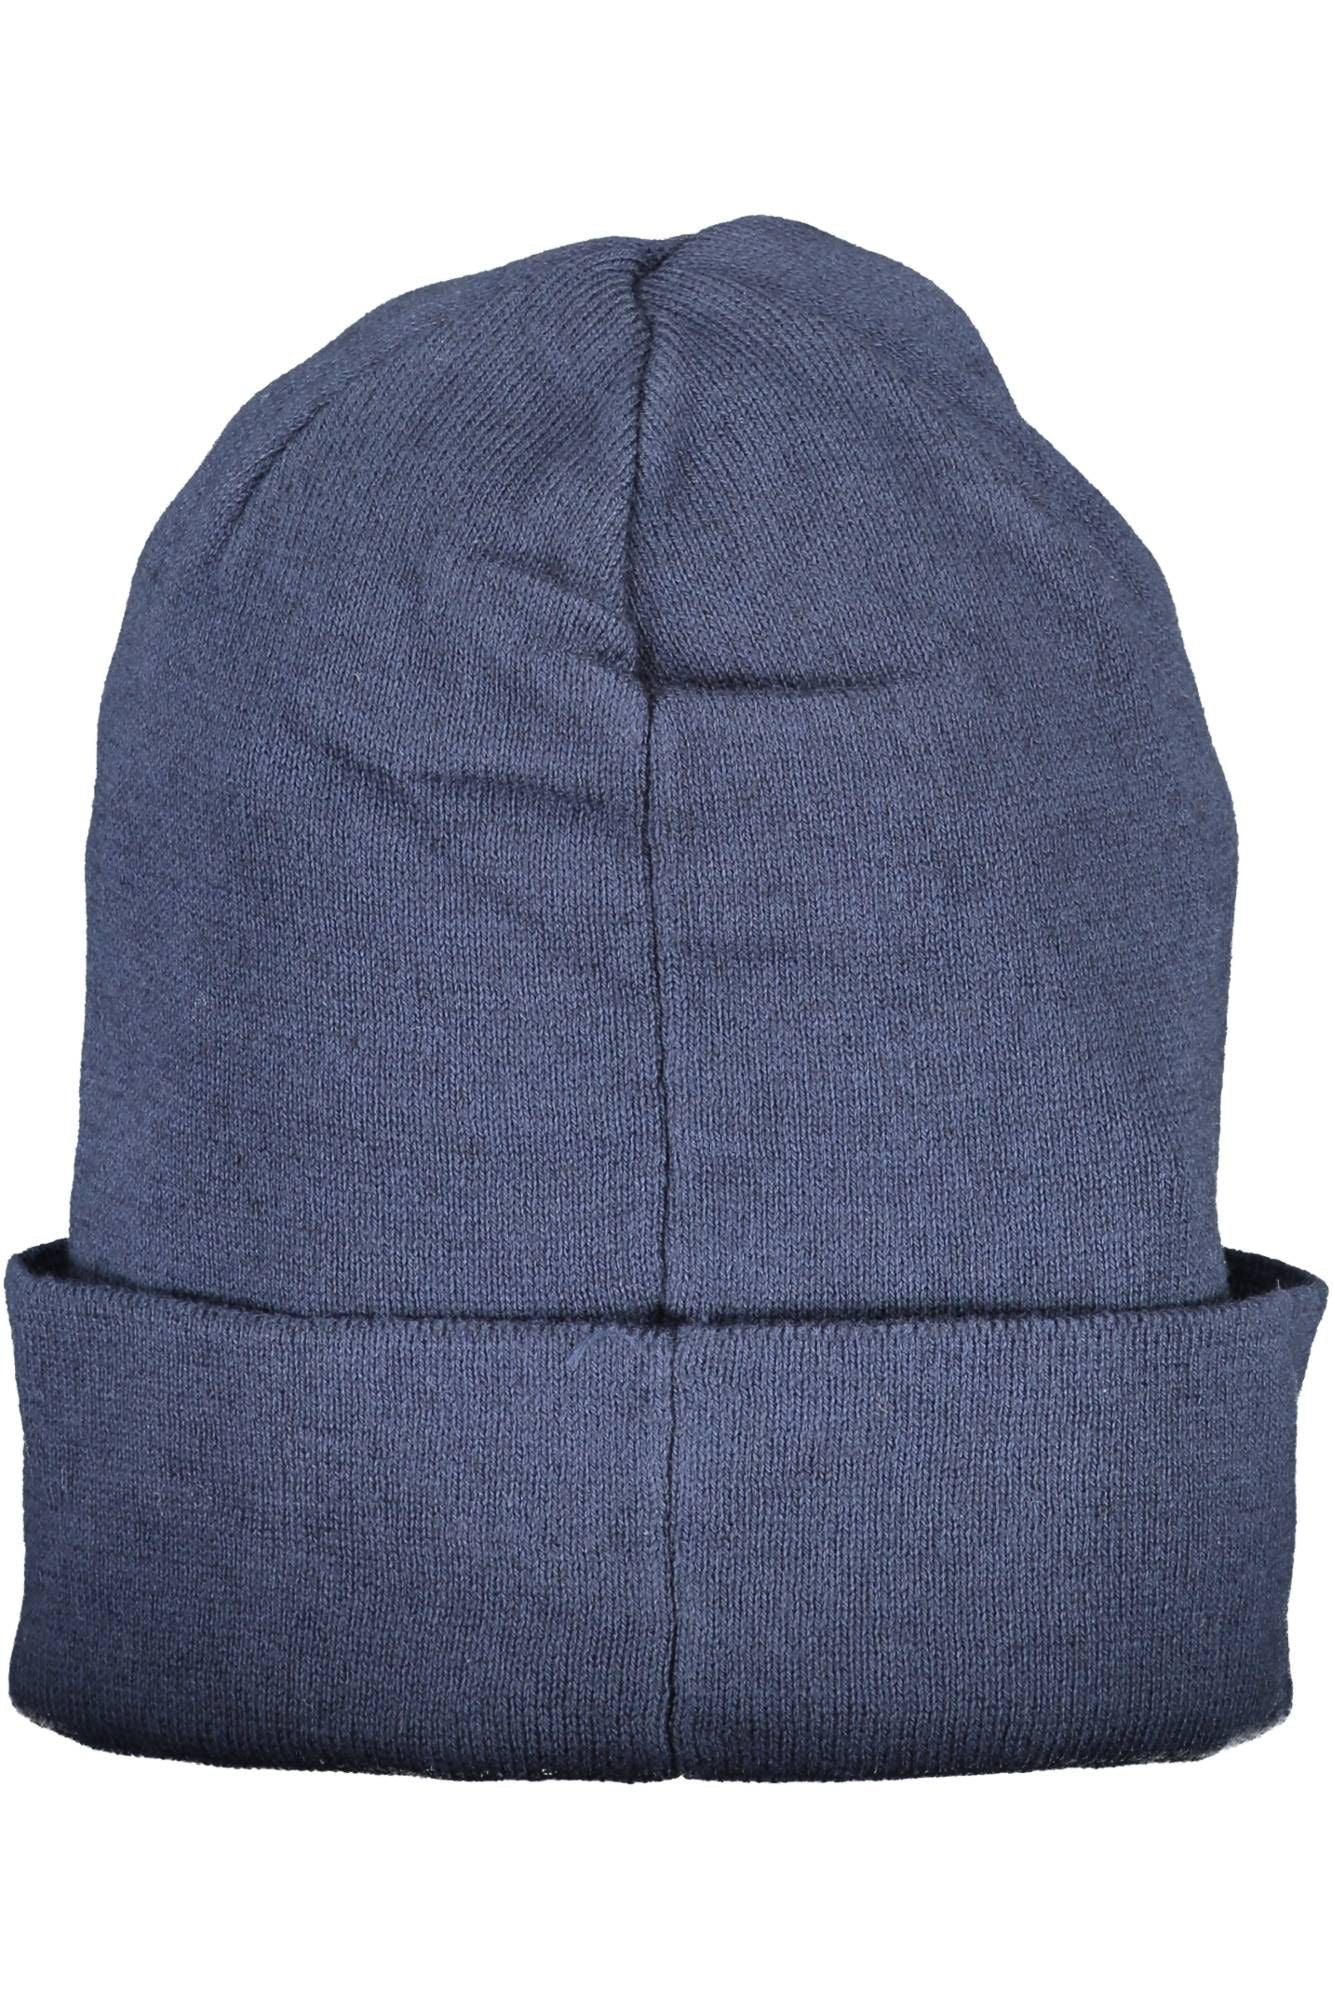 Chic Blue Cotton Cap with Logo Appliqué